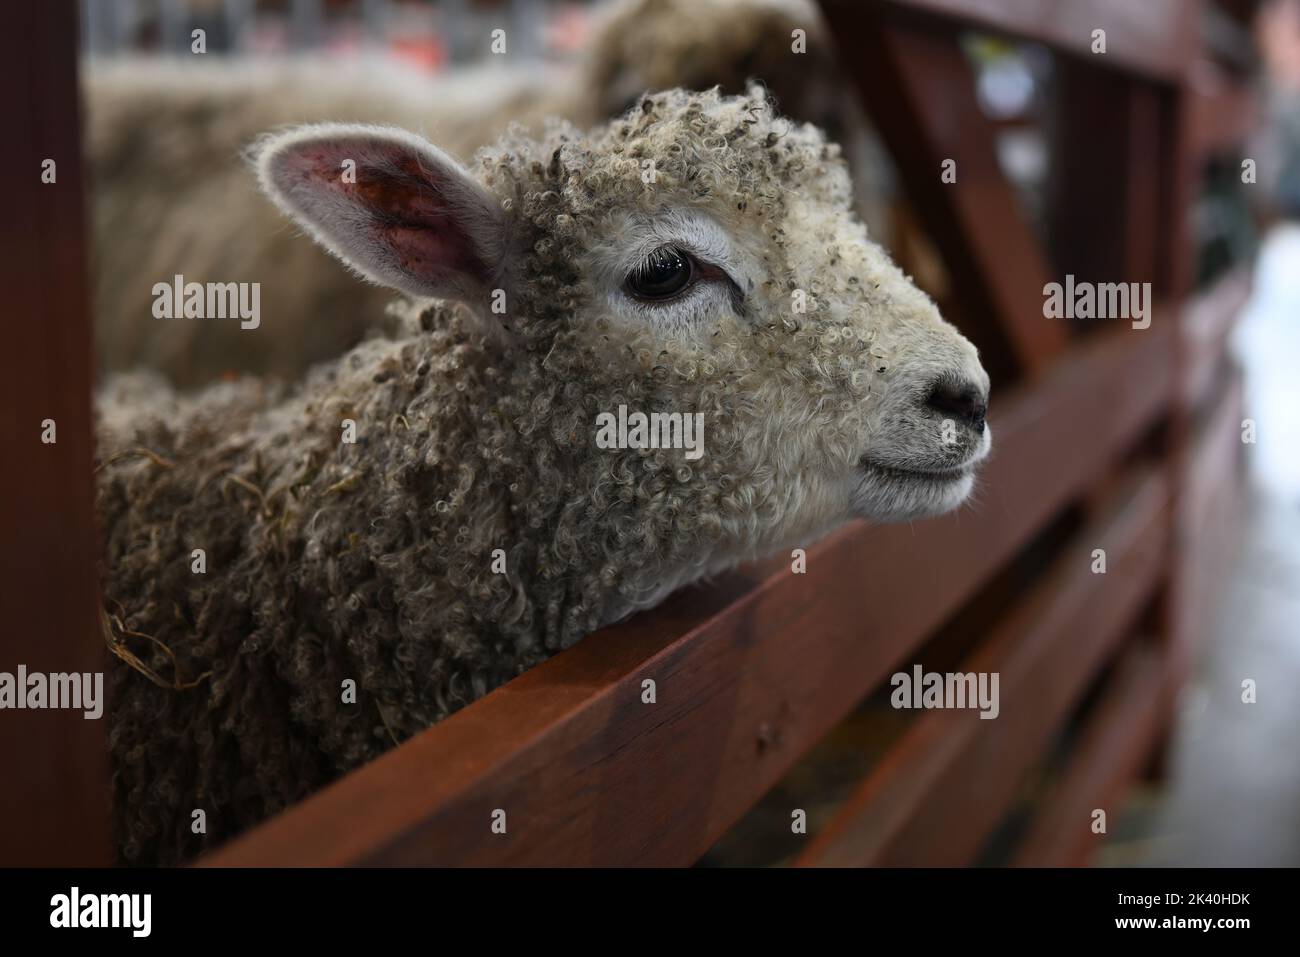 Vue latérale d'un agneau, ou de bébé mouton, en piquant la tête à travers le trou dans une porte en bois, avec une faible profondeur de champ Banque D'Images